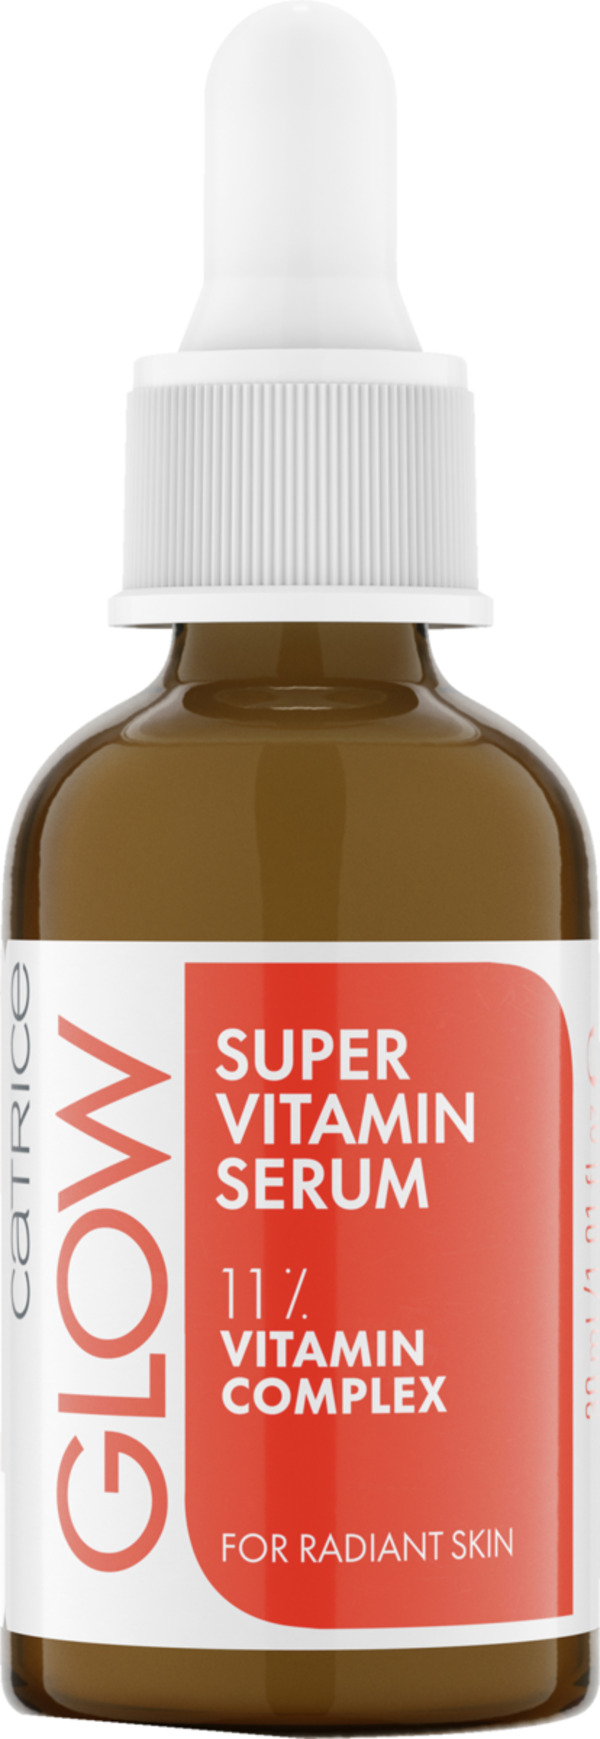 Bild 1 von Catrice Glow Super Vitamin Serum